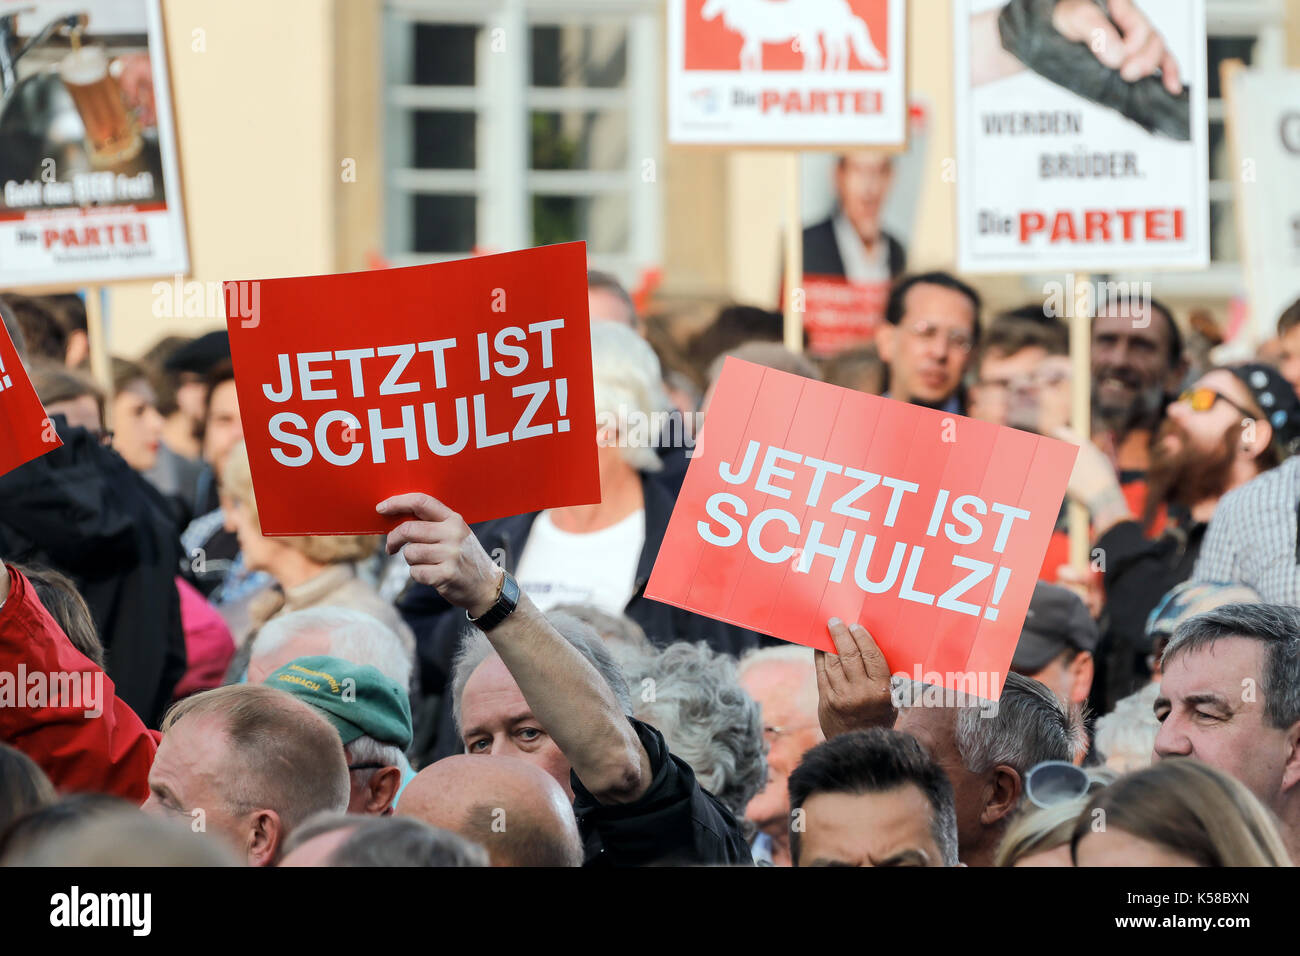 Bamberg, Allemagne. 05Th sep 2017. spd partisans tenir affiche qui est maintenant lire "schulz" à un événement de la campagne électorale, à Bamberg, Allemagne, 08 septembre 2017. Maintenant, c'est "schulz" des sons similaires à la phrase allemande pour "maintenant c'est plus' (jetzt ist schluss) - il a le double sens de "maintenant il est temps que Martin Schulz' et 'Angela Merkel, le temps est écoulé". photo : Matthias Hoch/dpa/Alamy live news Banque D'Images